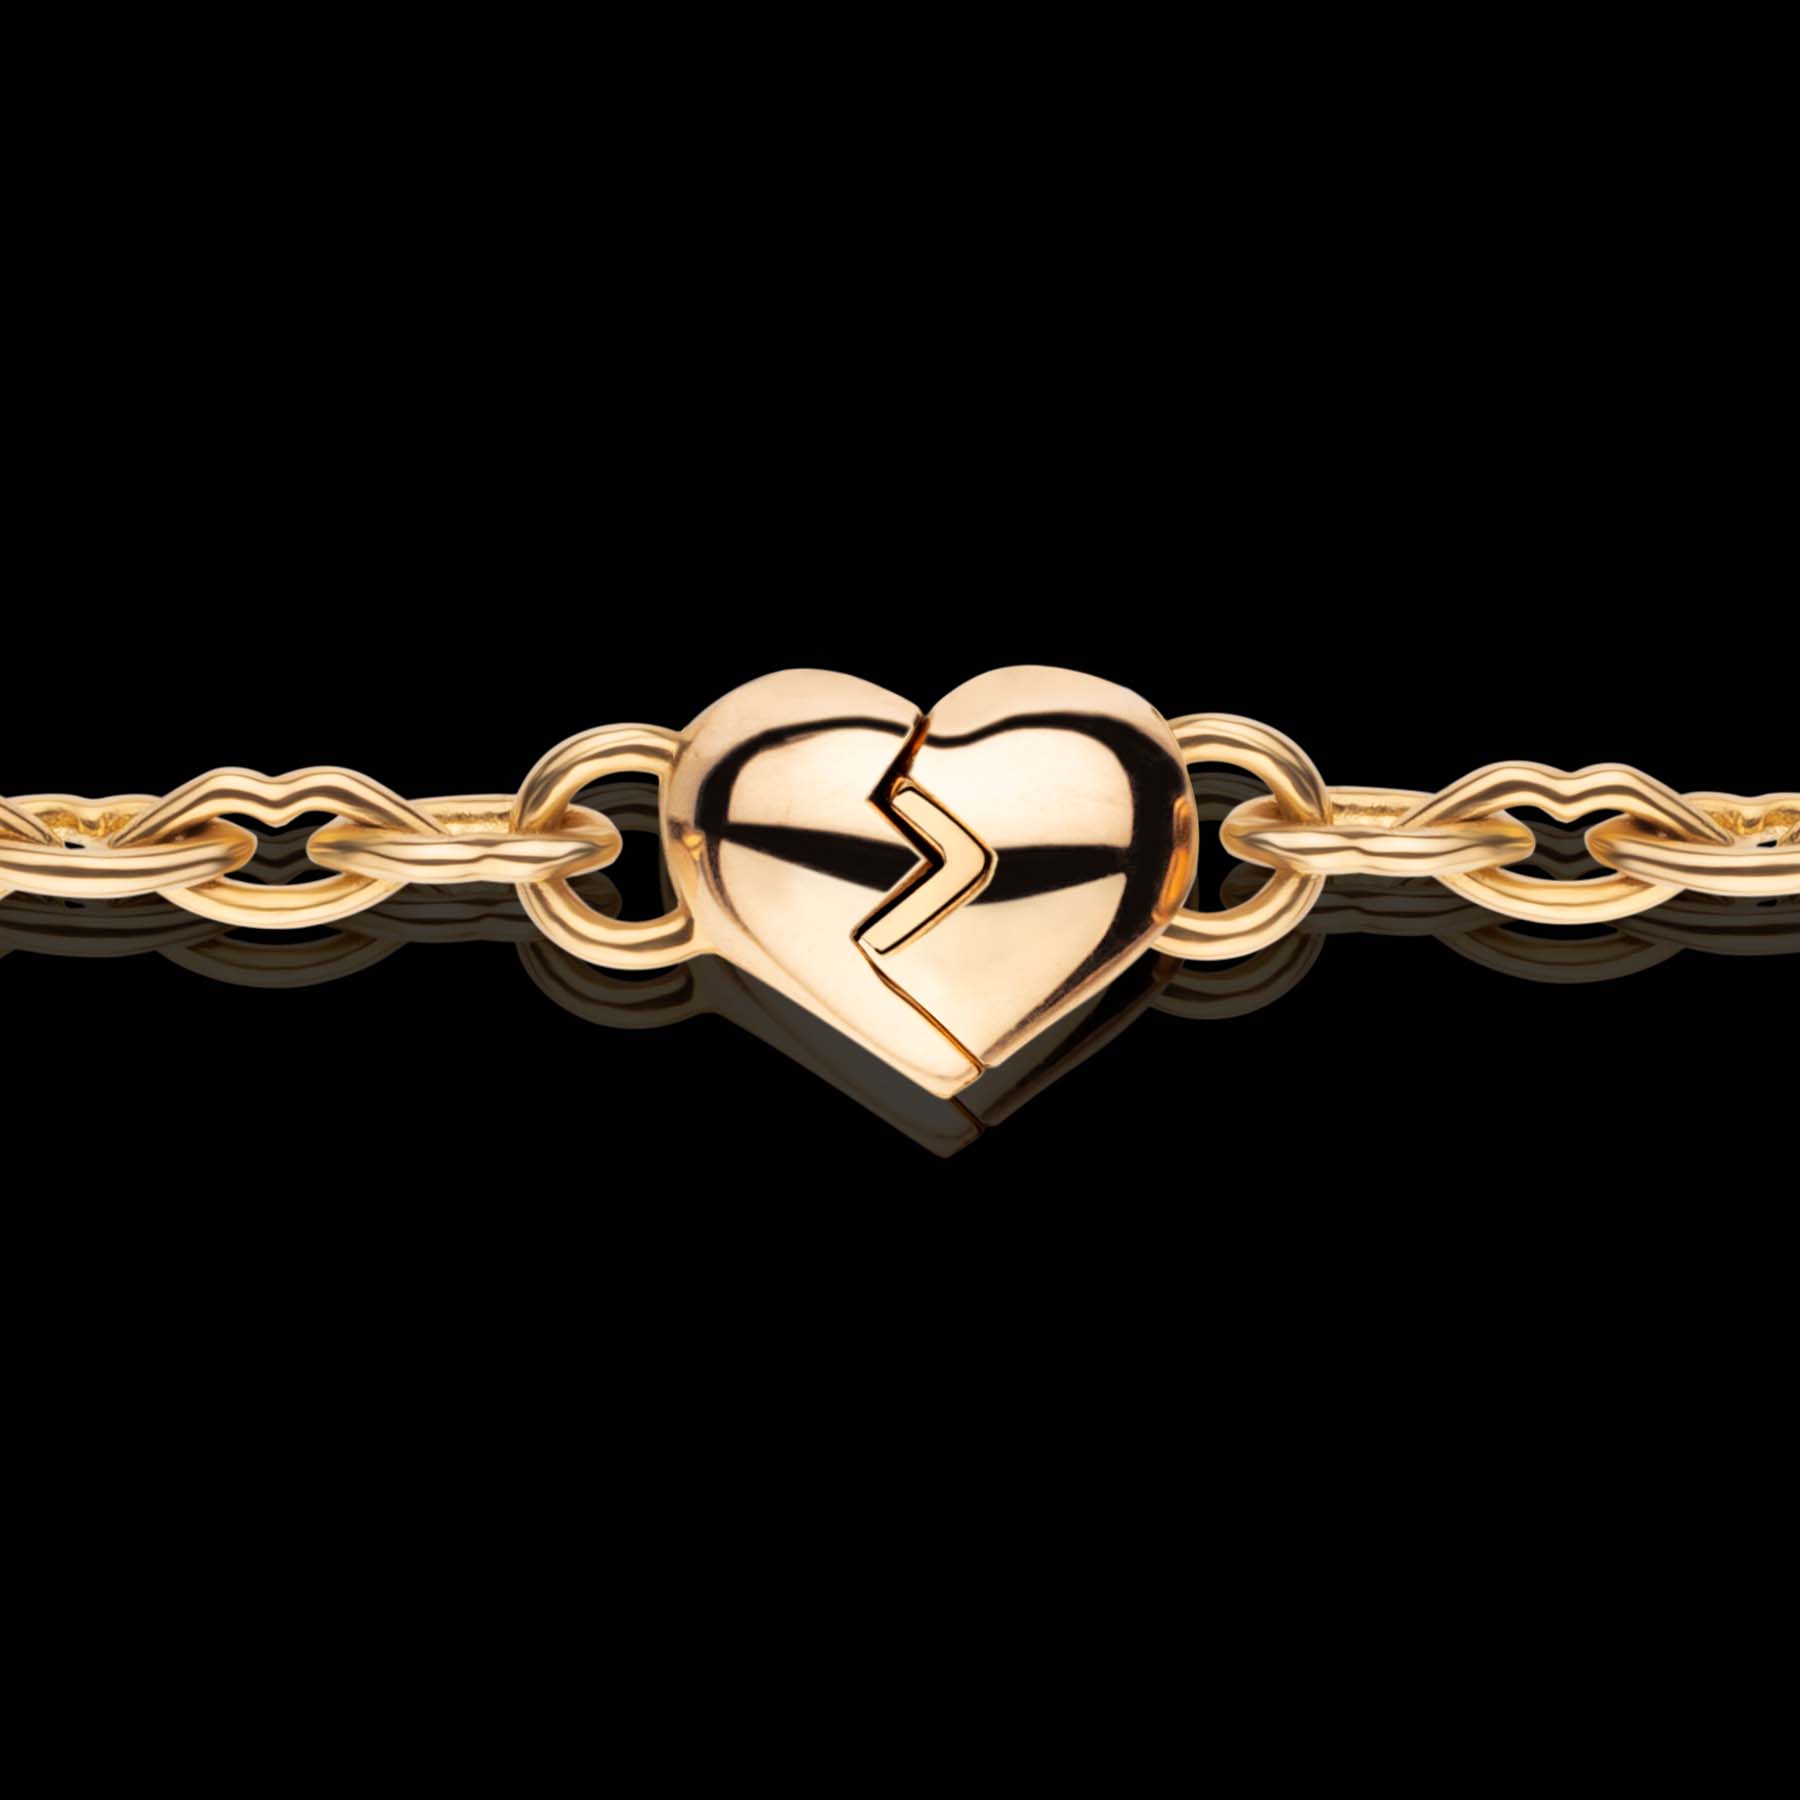 Love & Kisses Chain Bracelet by designer Solange Azagury Partridge - 18 carat Yellow Gold - front view close up